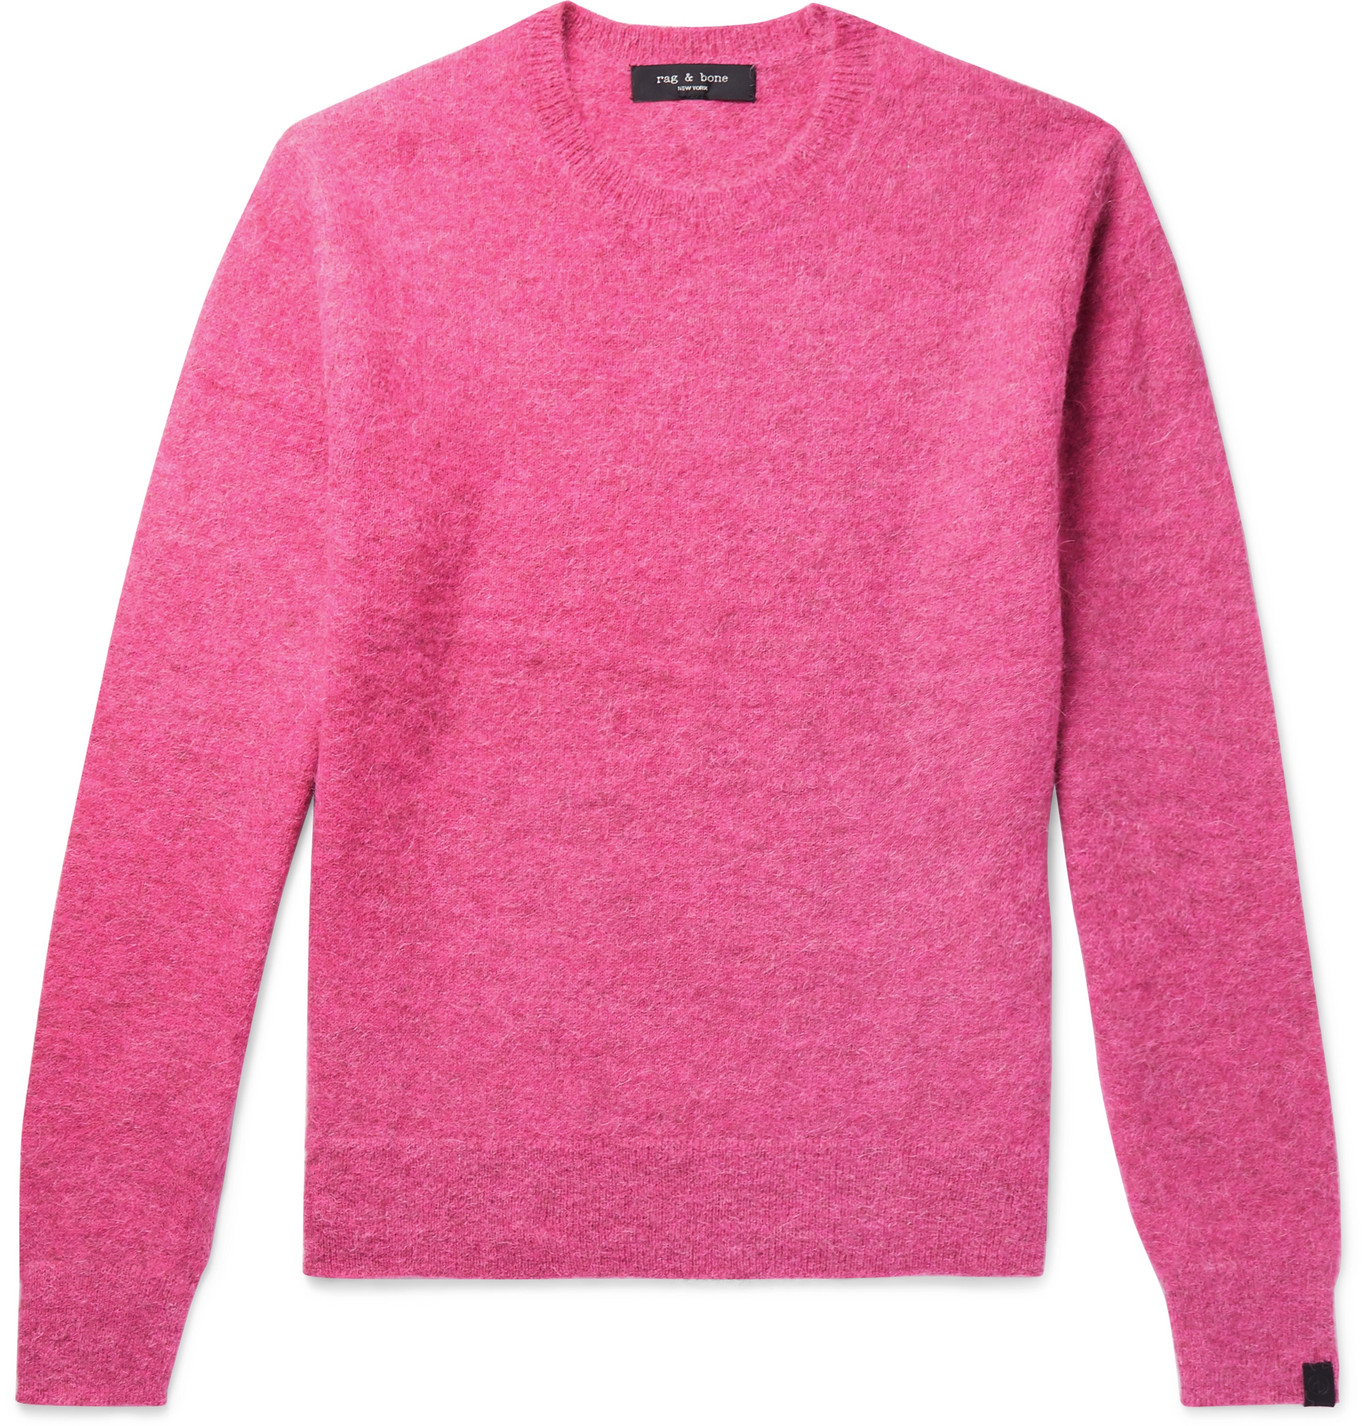 rag & bone - Arnie Alpaca-Blend Sweater - Men - Pink | The Fashionisto